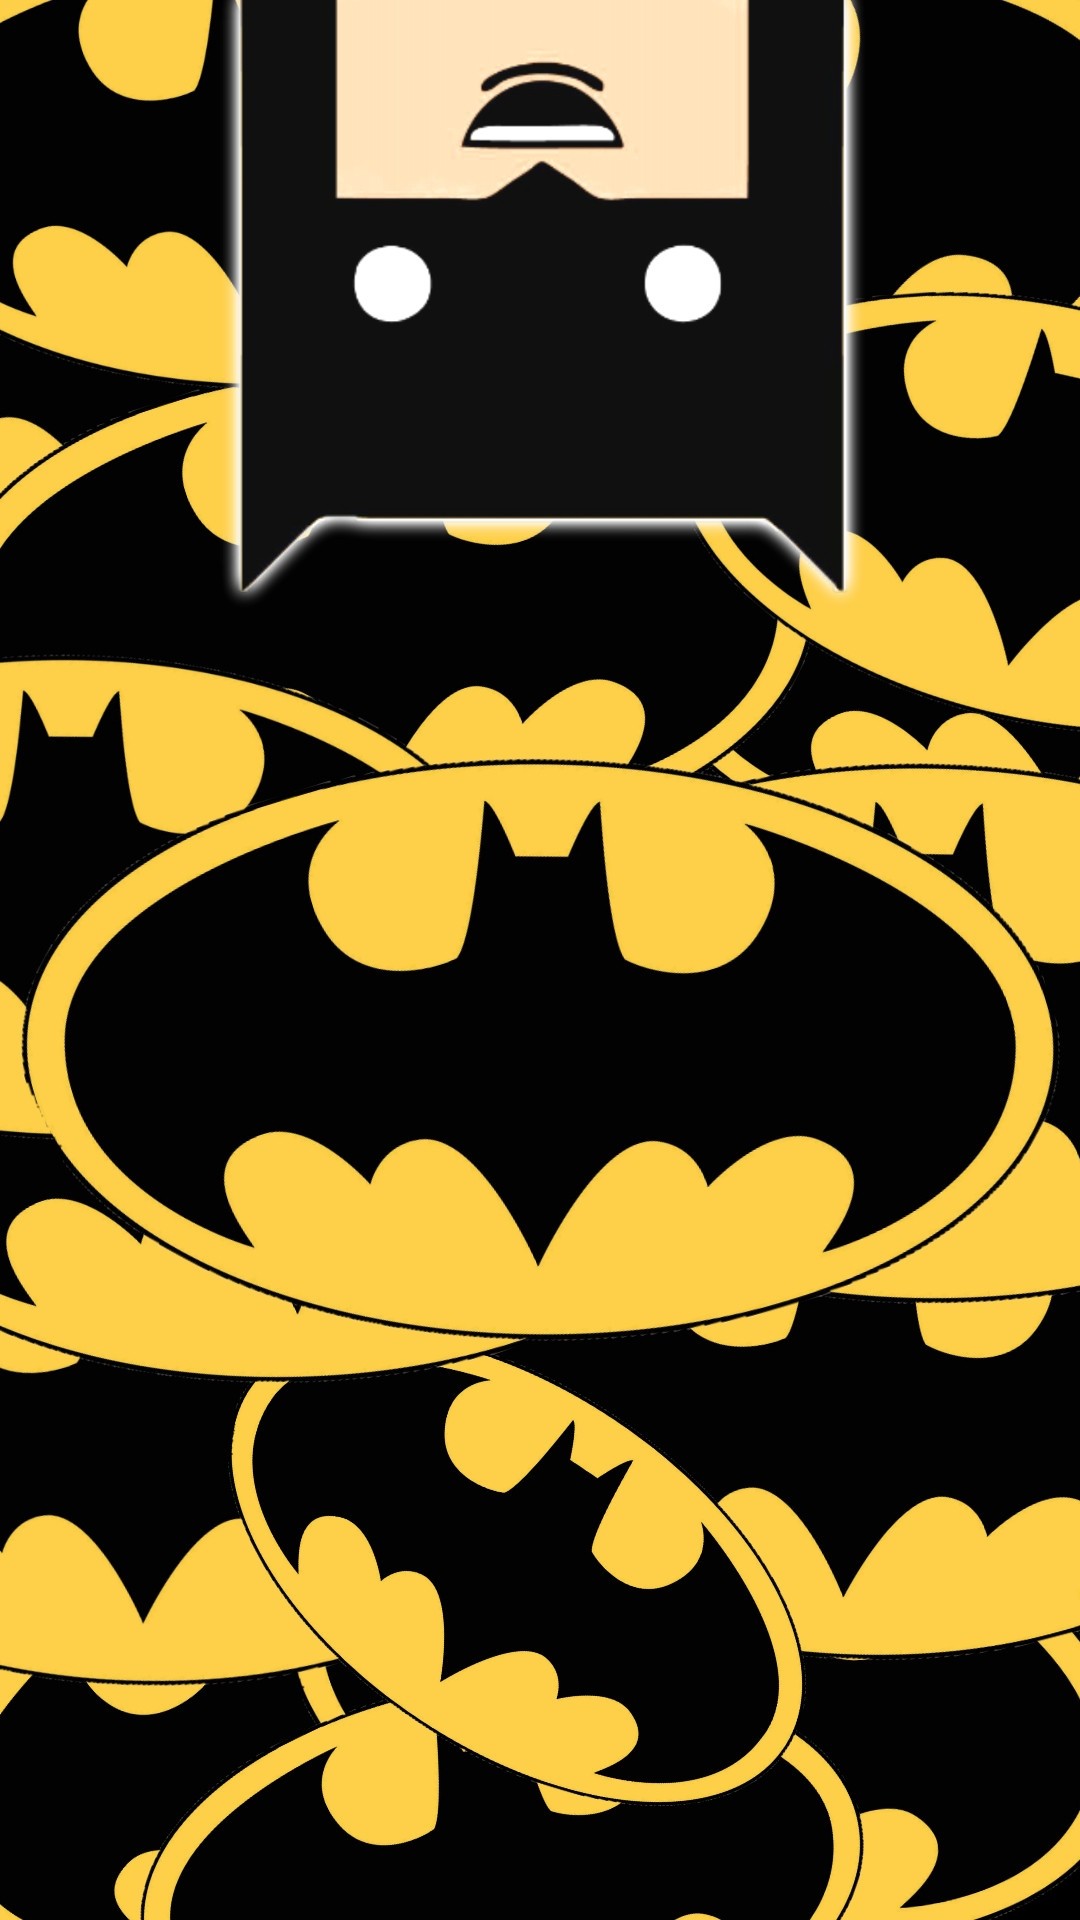 Batman Logo Wallpaper For Android - Logo Batman Six Flags - 1080x1920  Wallpaper 